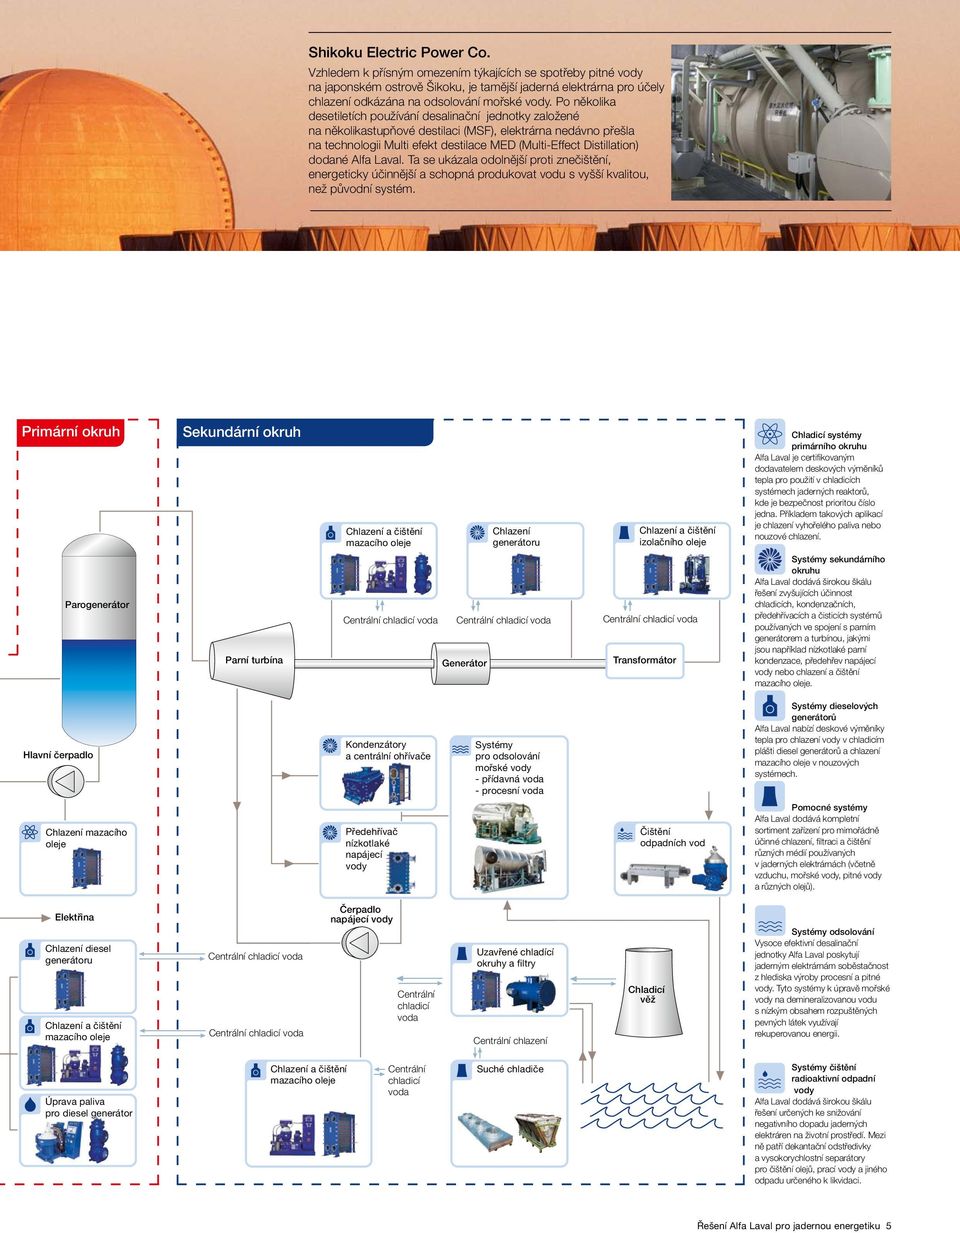 Po několika desetiletích používání desalinační jednotky založené na několikastupňové destilaci (MSF), elektrárna nedávno přešla na technologii Multi efekt destilace MED (Multi-Effect Distillation)